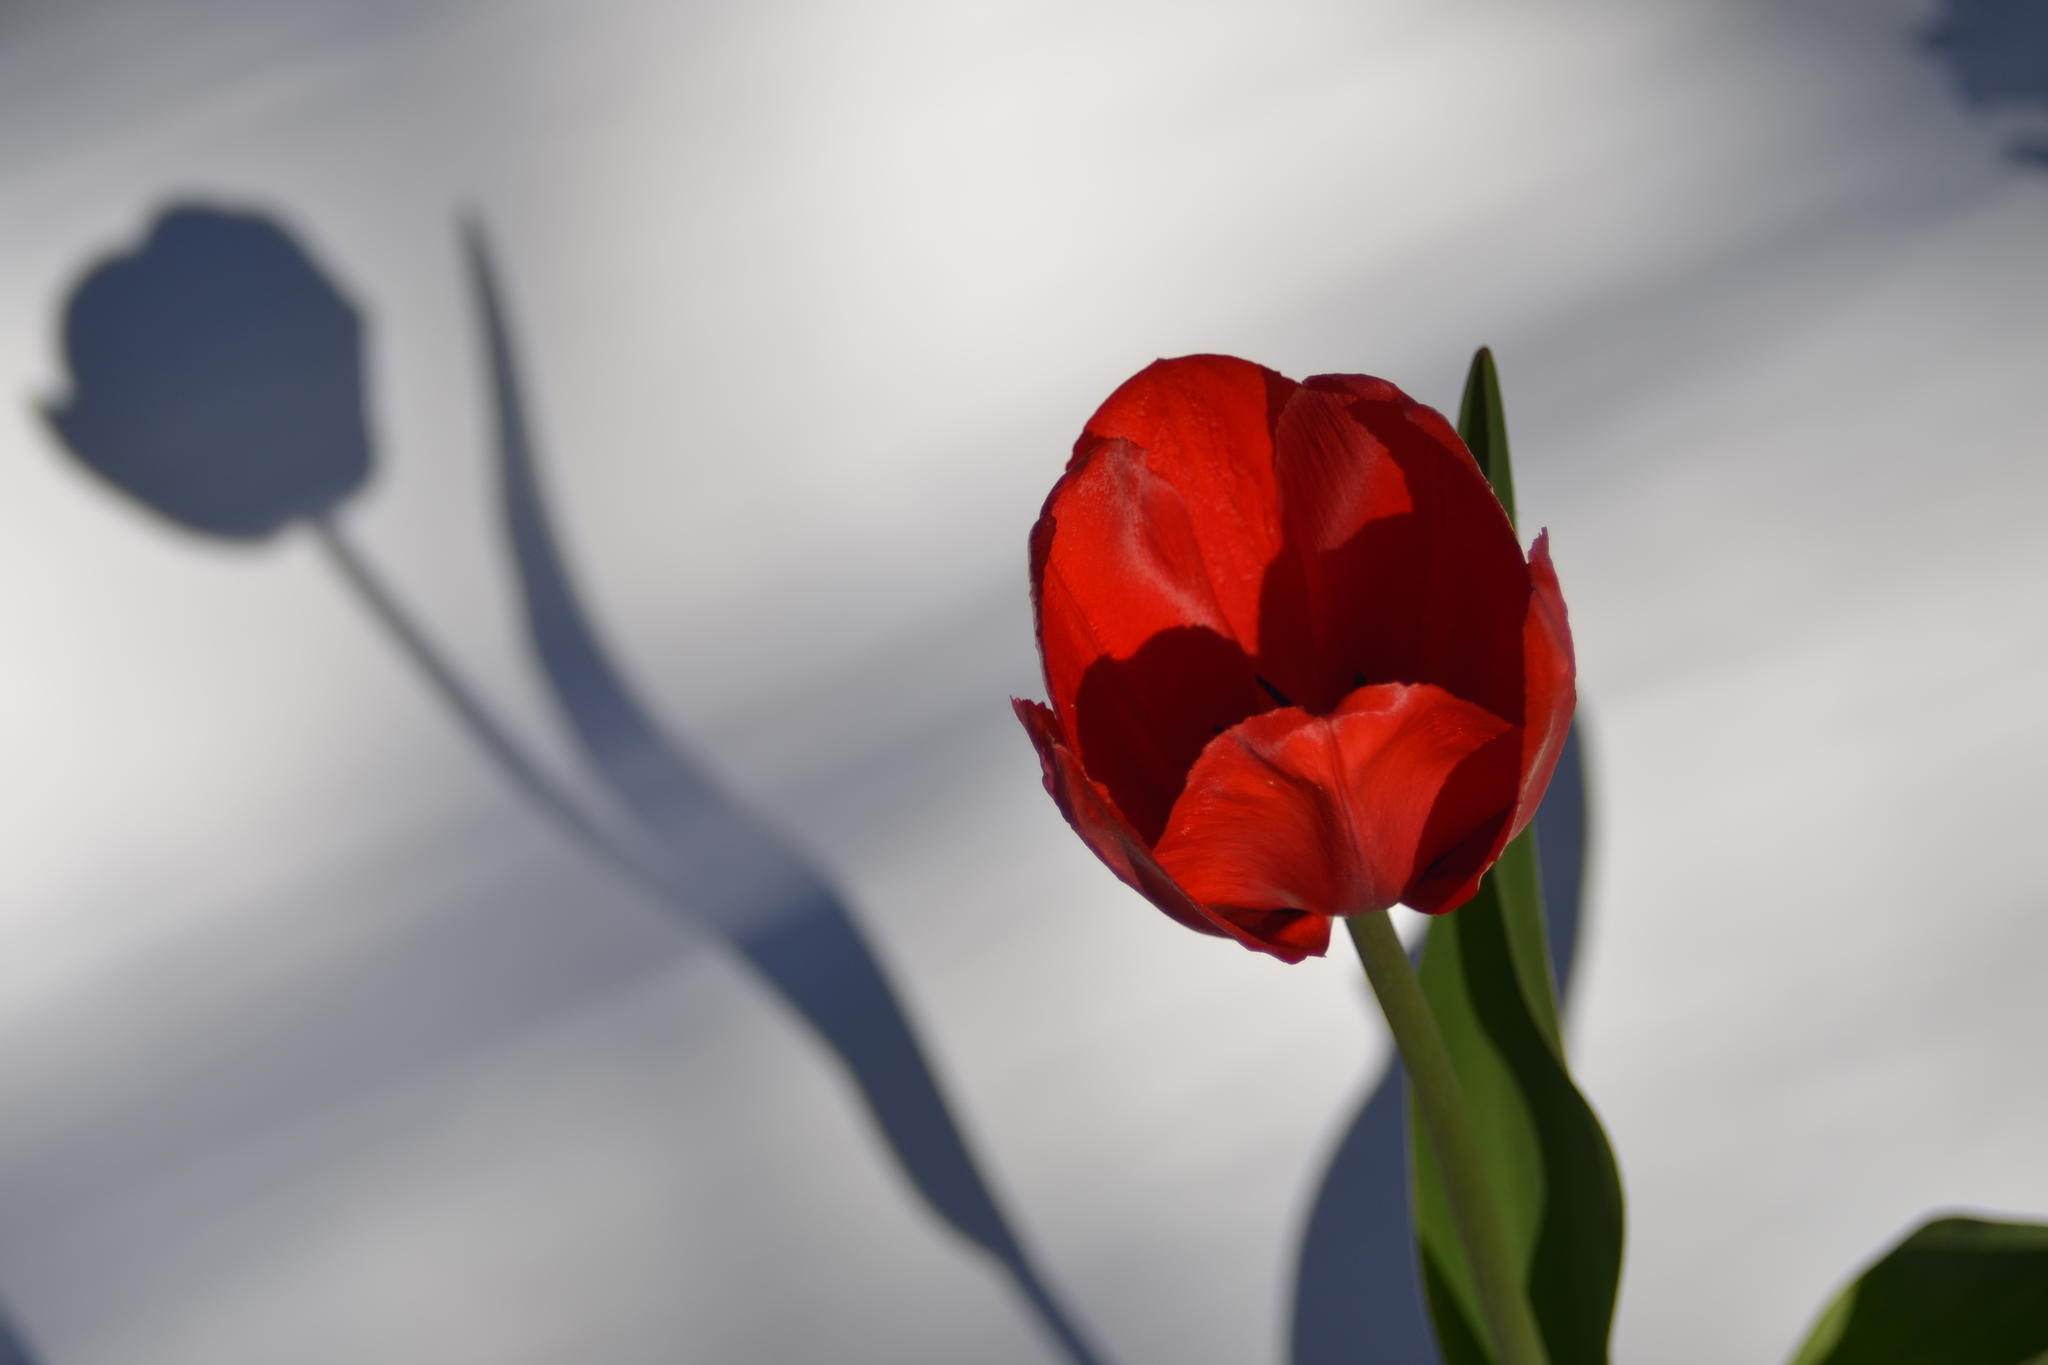 Tulip by Robert Zhang